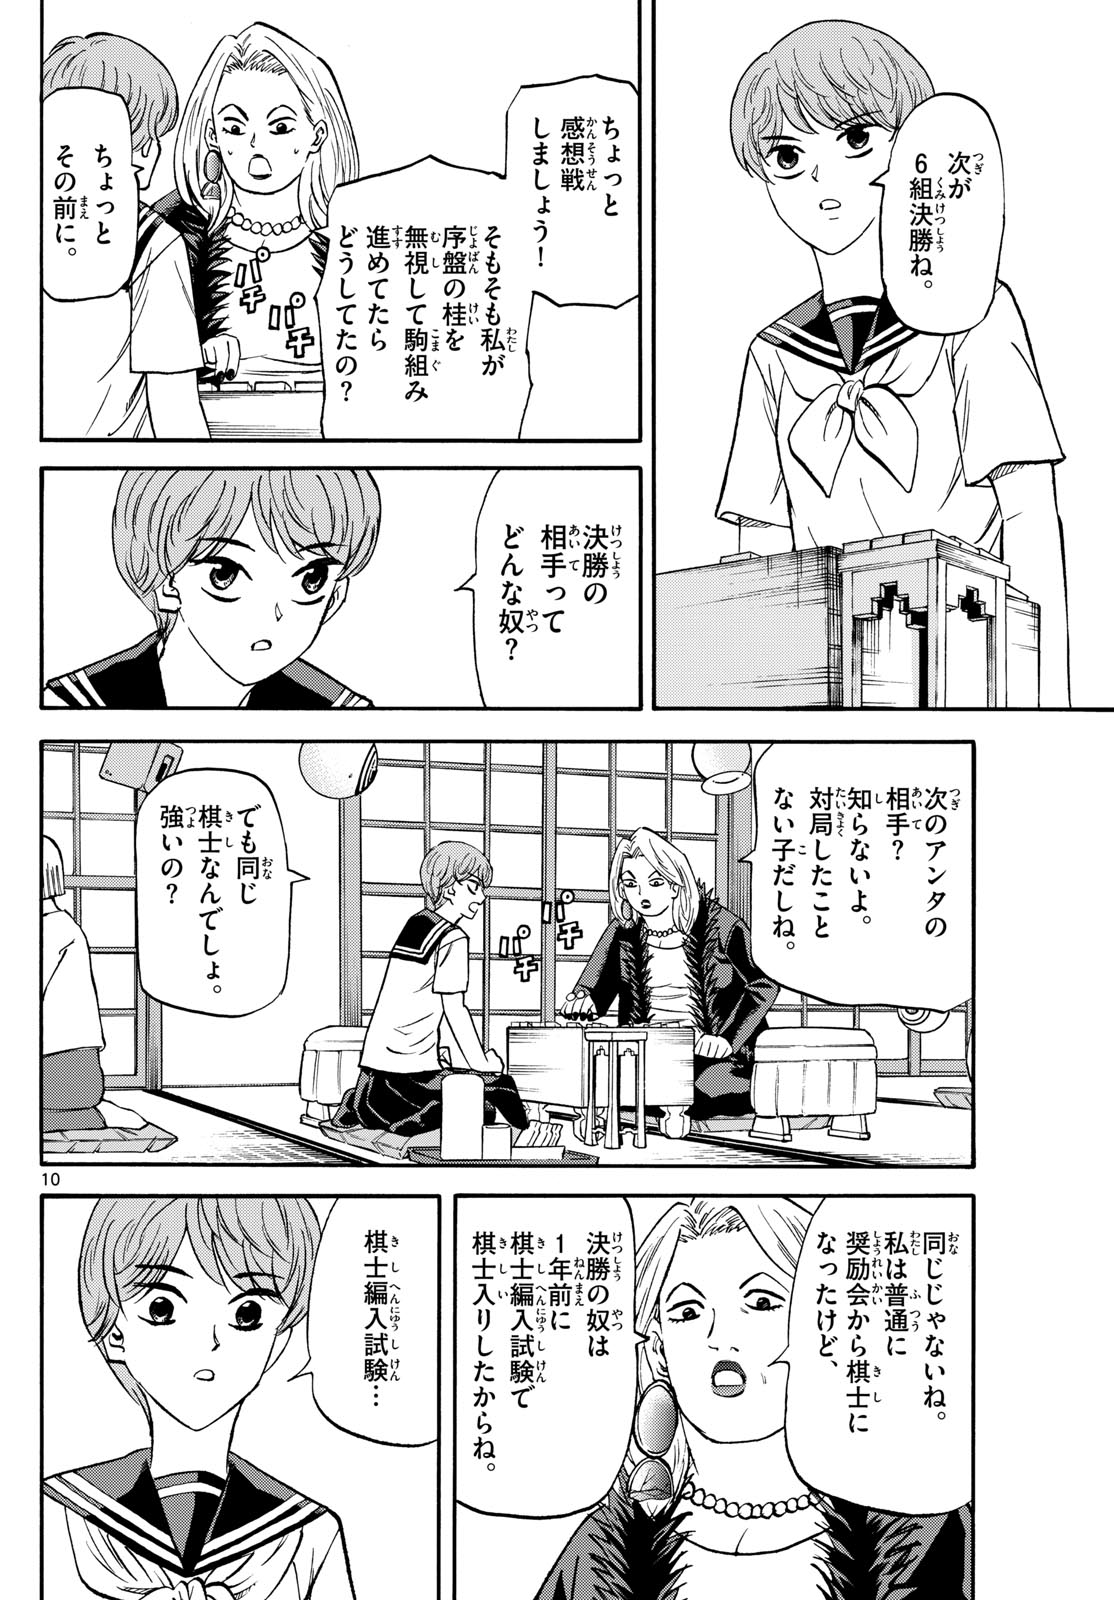 Tatsu to Ichigo - Chapter 192 - Page 10